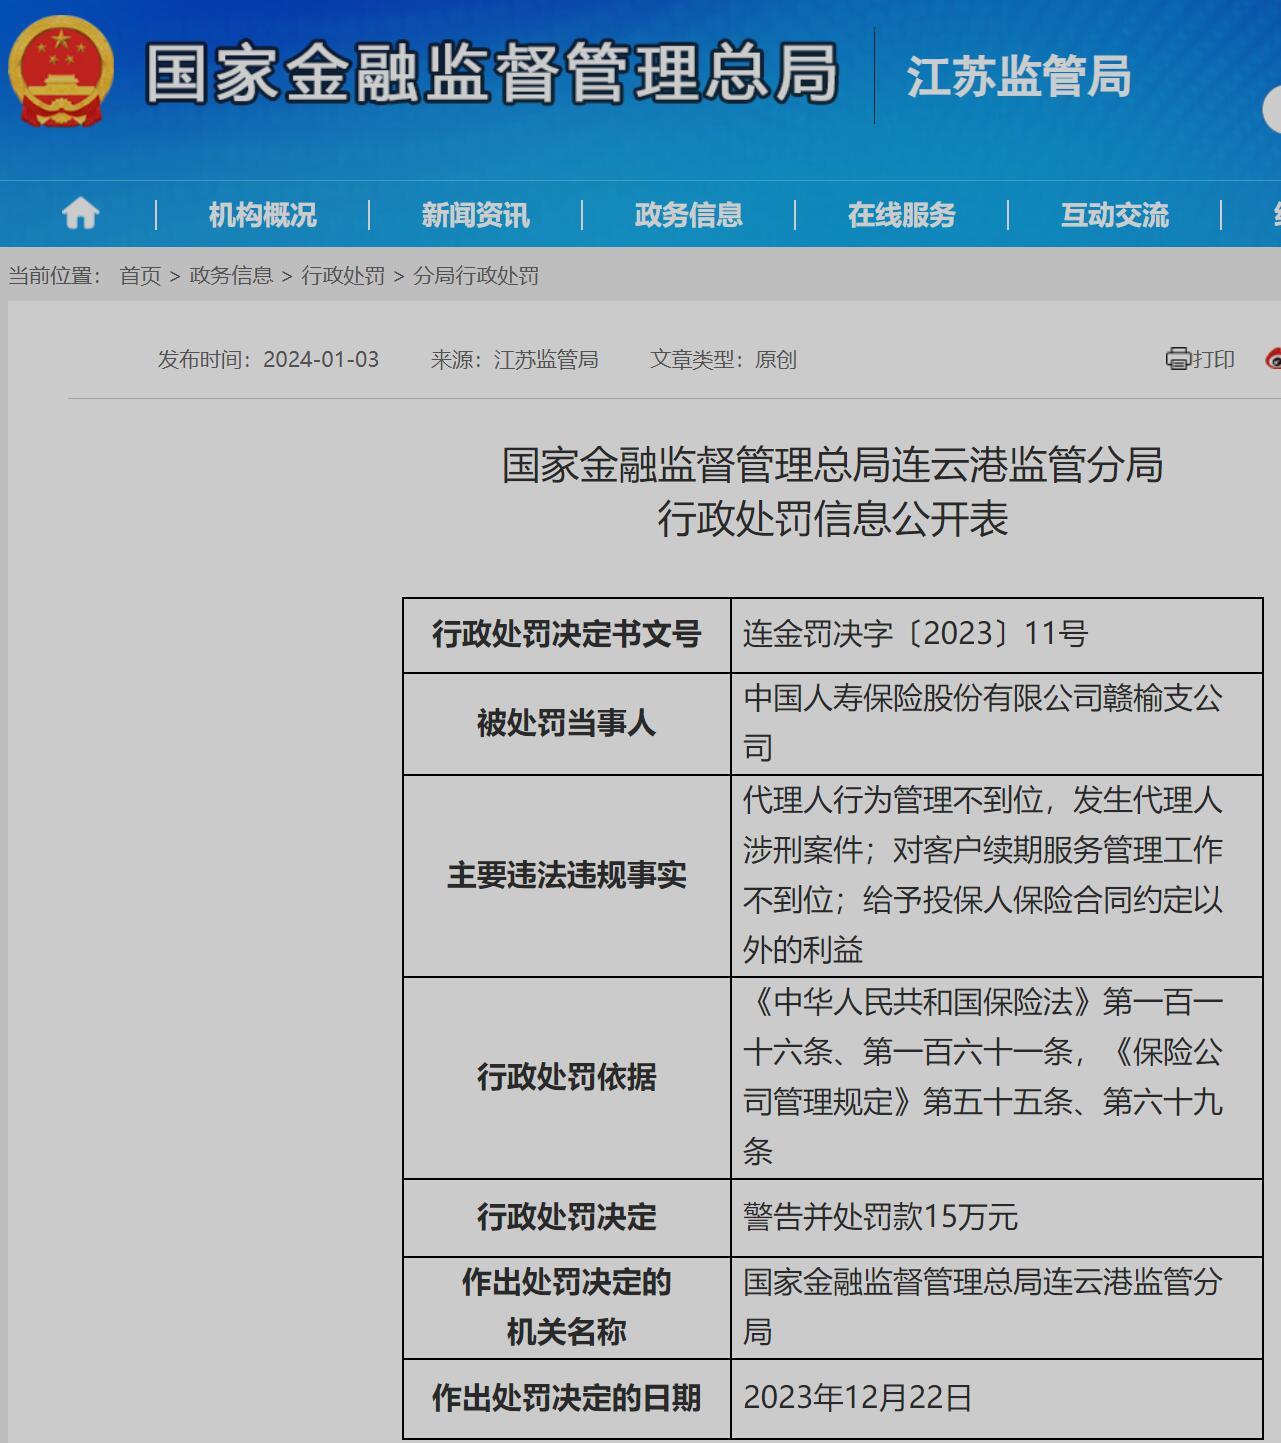 中国人寿保险股份有限公司赣榆支公司被罚15万元